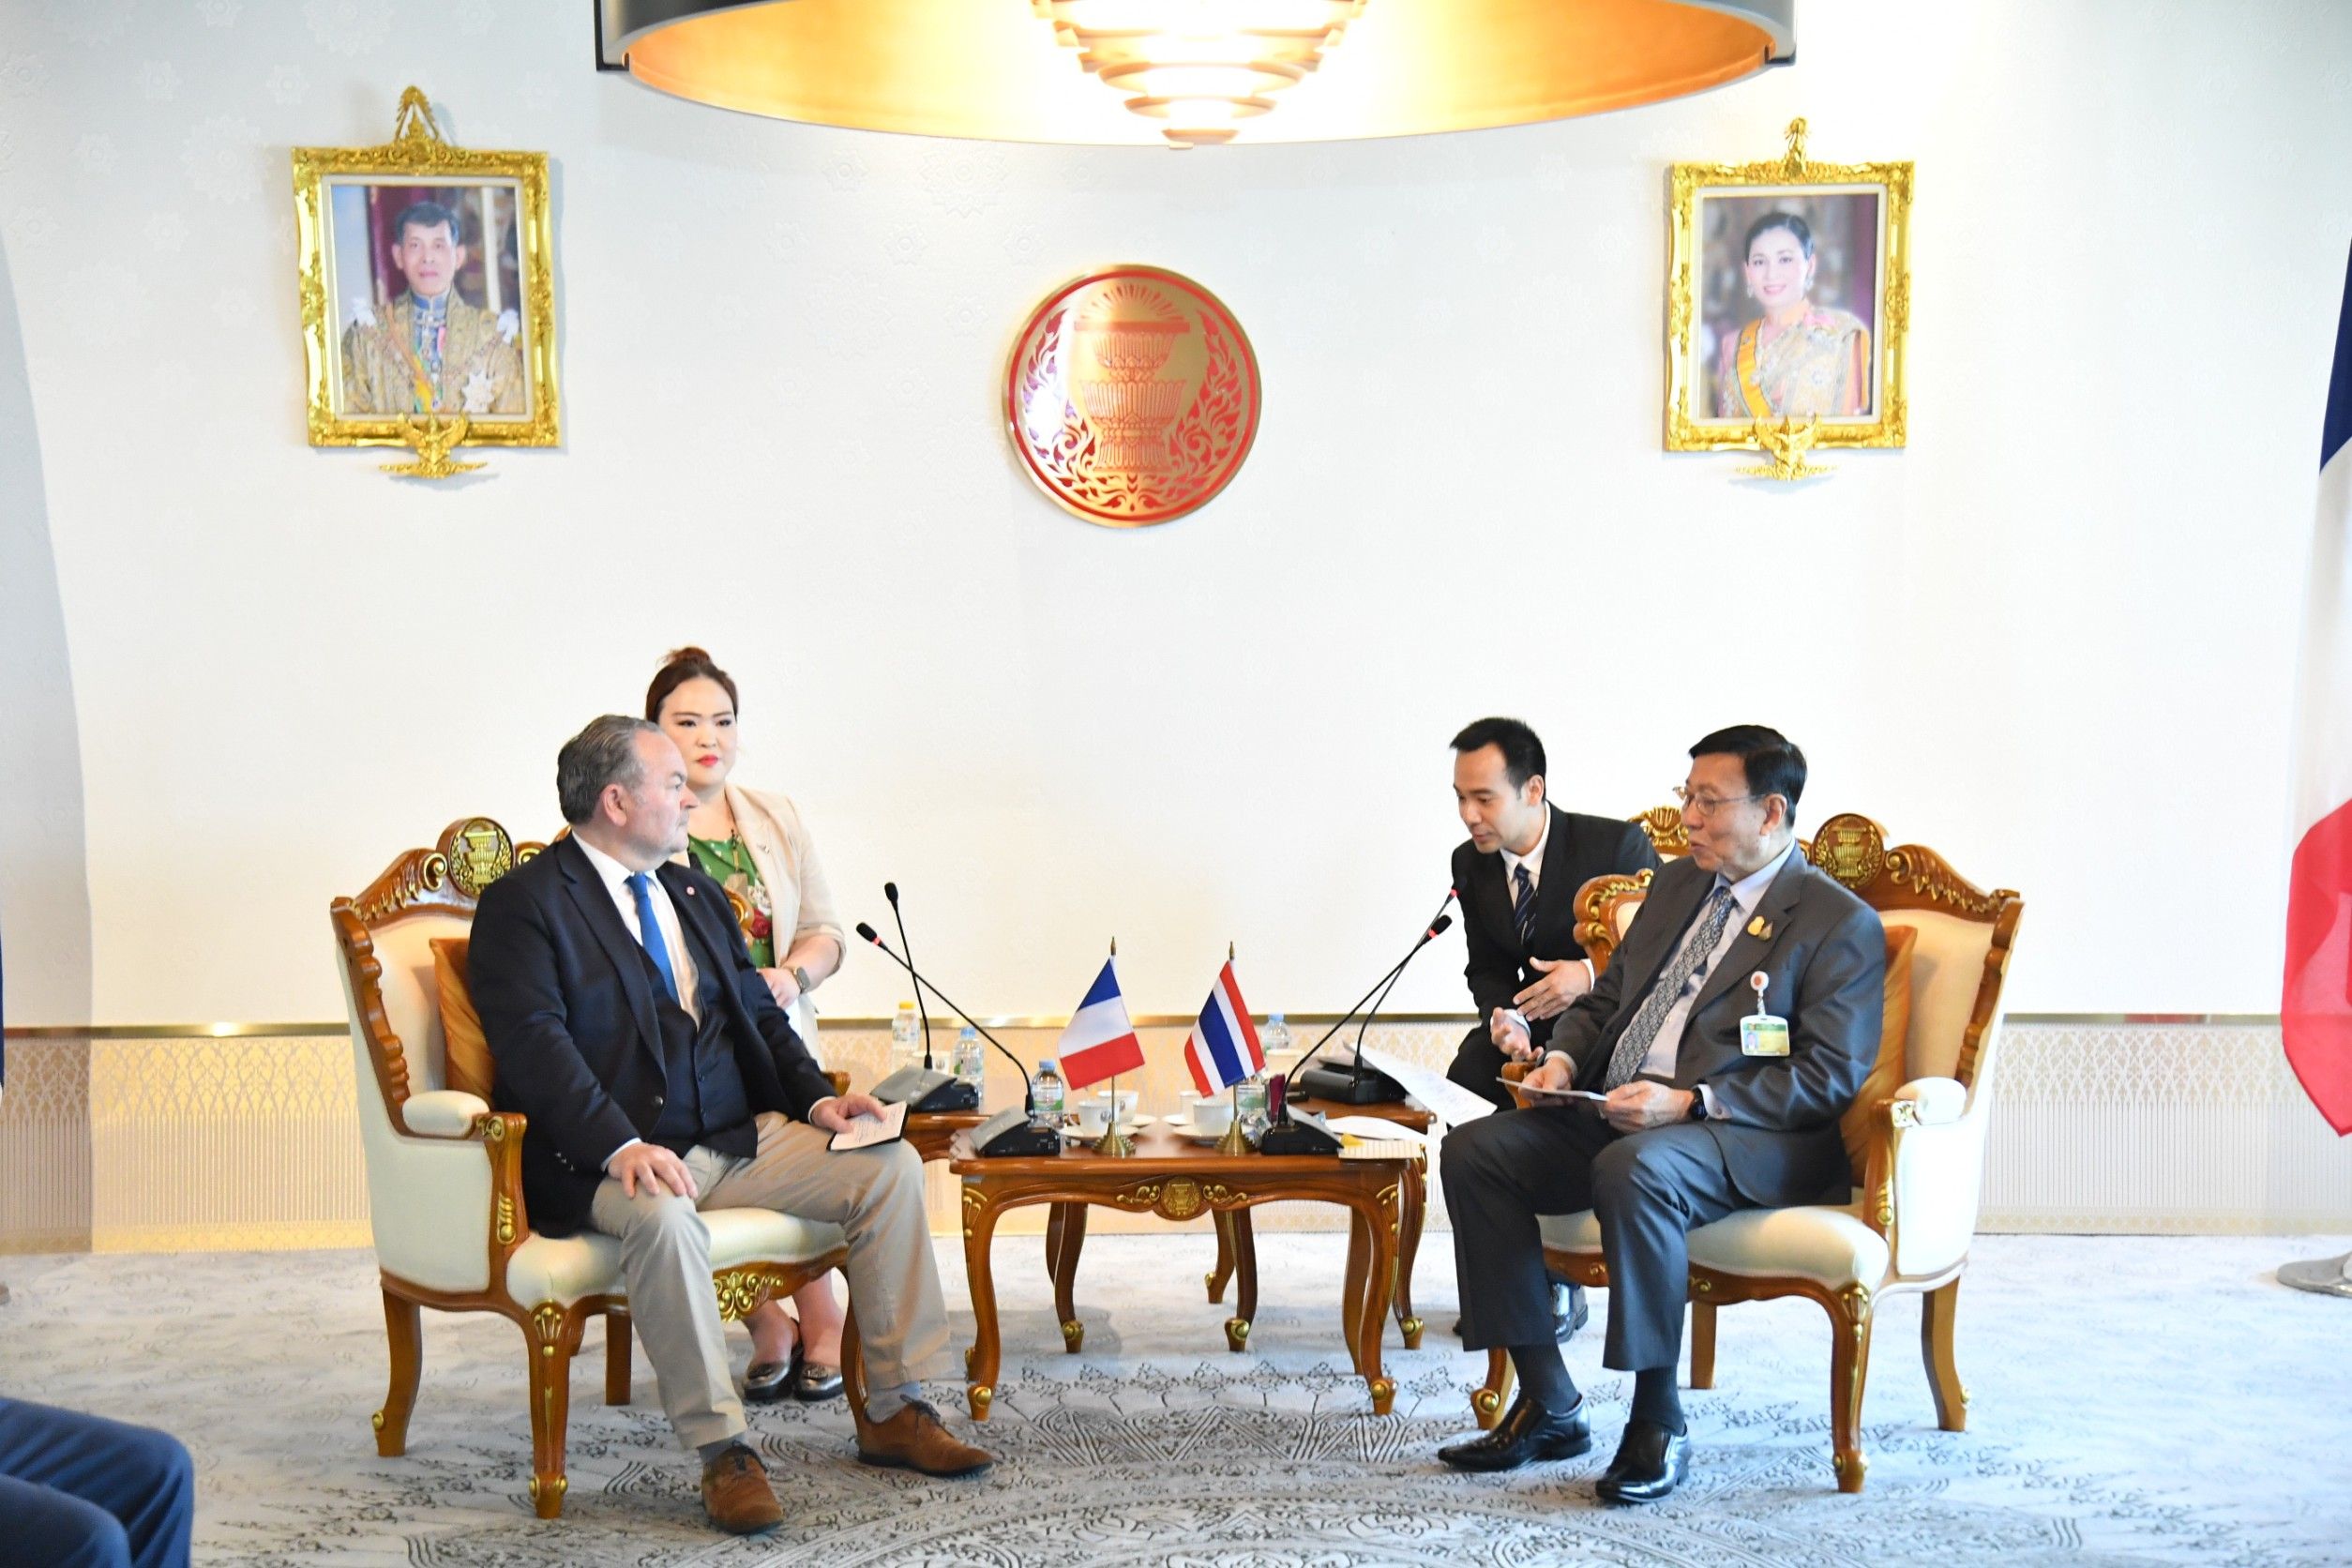 ประธานวุฒิสภาให้การรับรองประธานกลุ่มมิตรภาพสมาชิกรัฐสภา ฝรั่งเศส-เอเชียตะวันออกเฉียงใต้ ของวุฒิสภาสาธารณรัฐฝรั่งเศส ในโอกาสเยือนประเทศไทย วันศุกร์ที่ ๒๓ กุมภาพันธ์ ๒๕๖๗ 